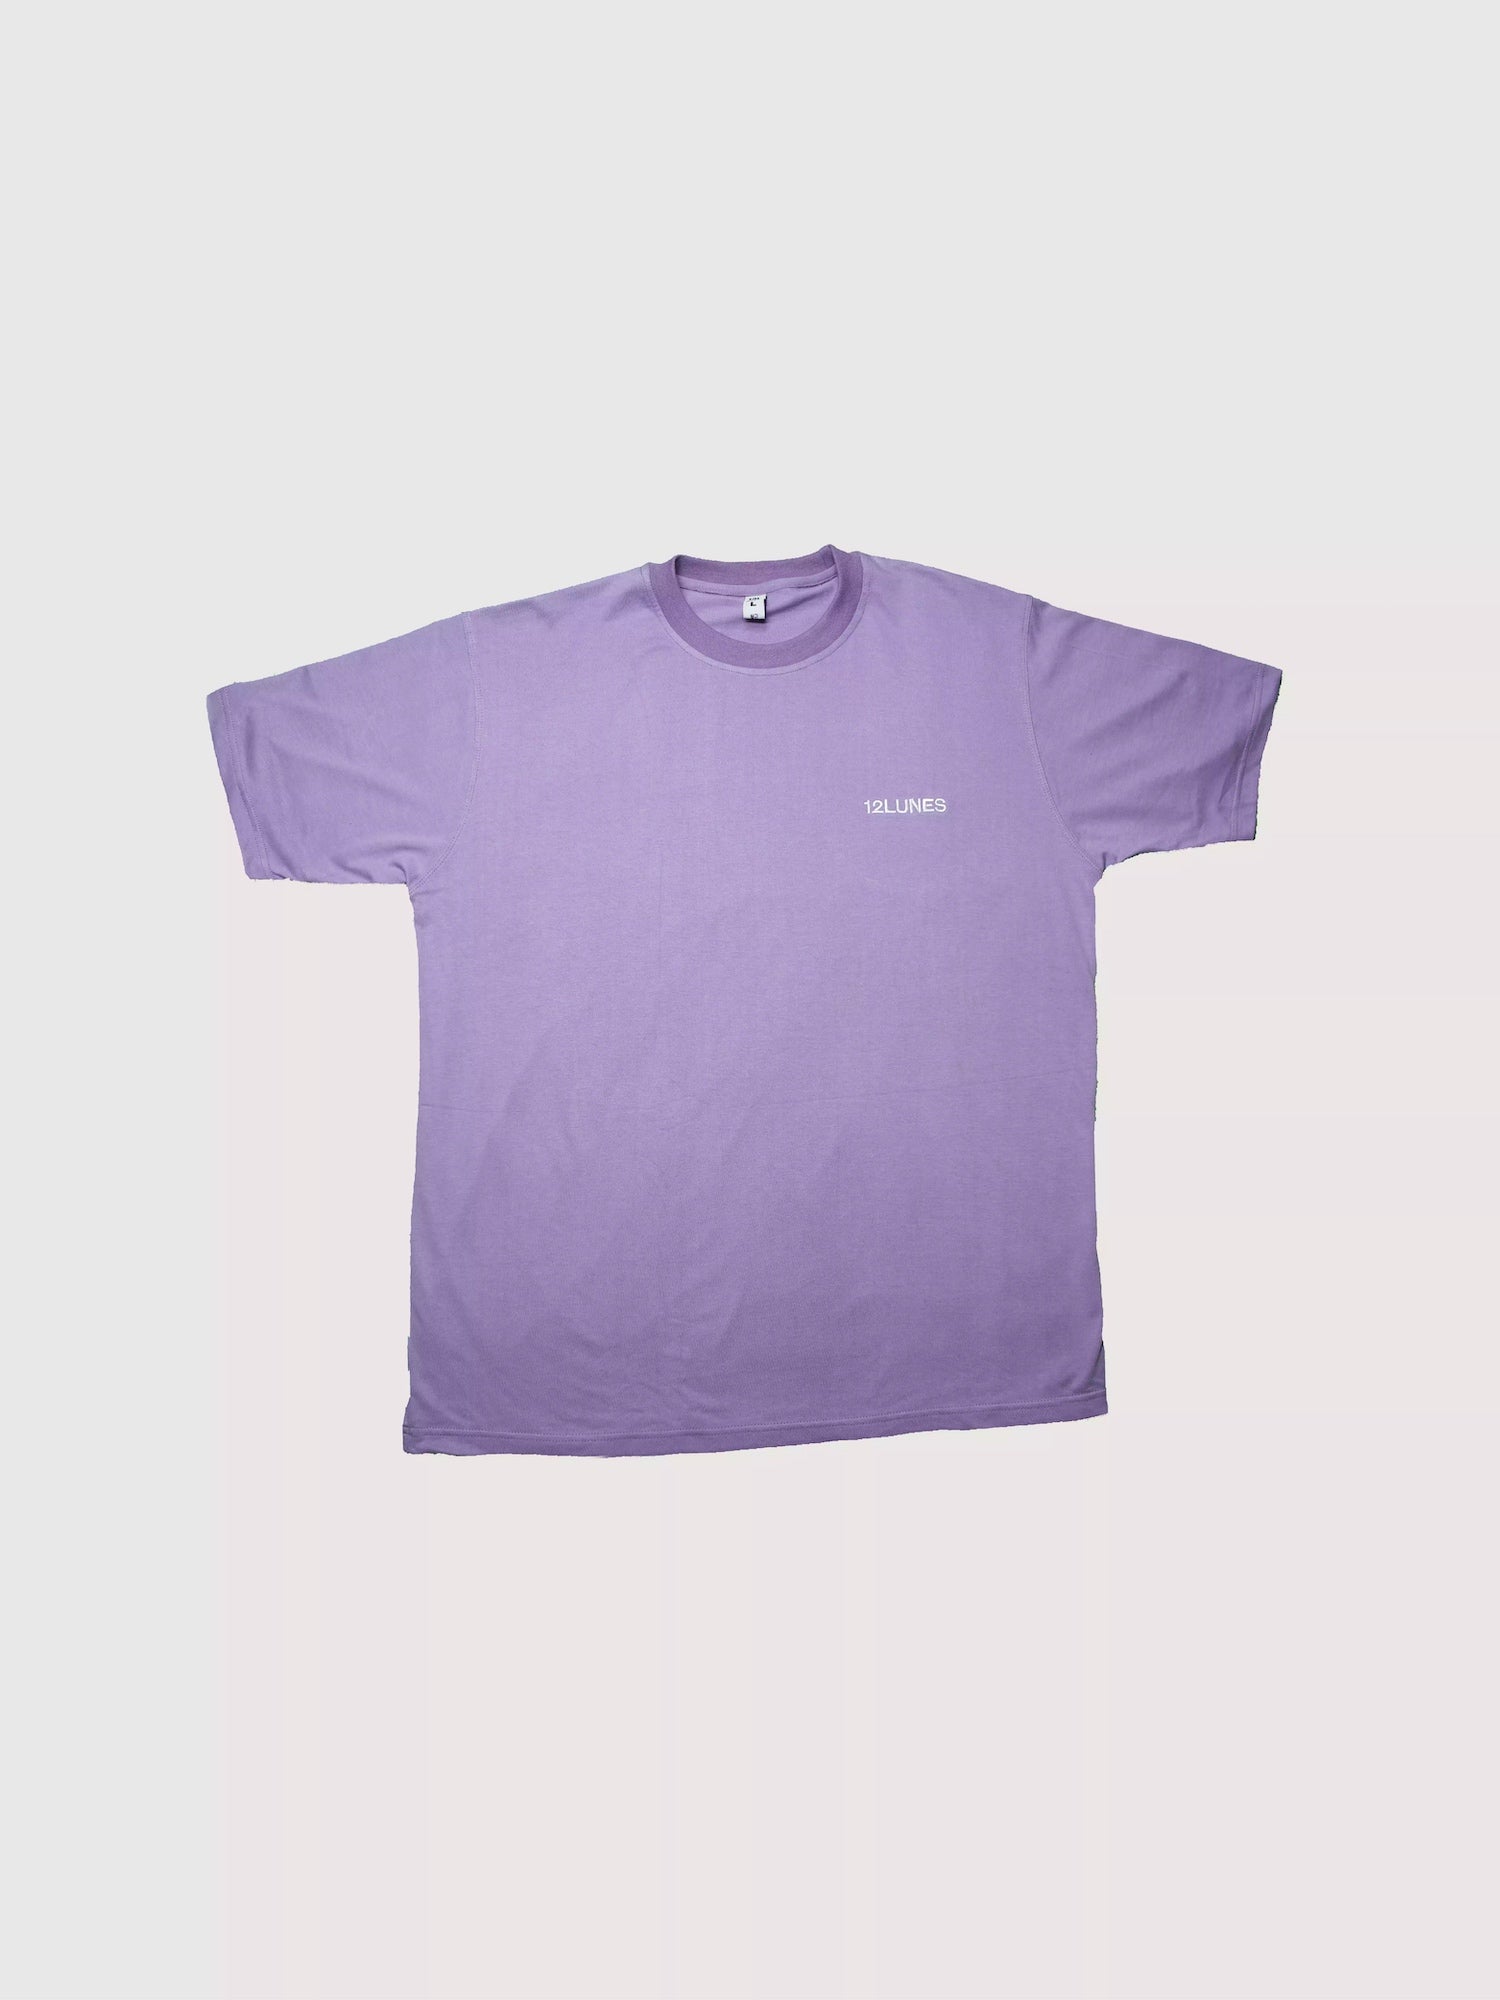 Tee shirt oversize violet pâle avec logo brodé en blanc - Collection été 12LUNES